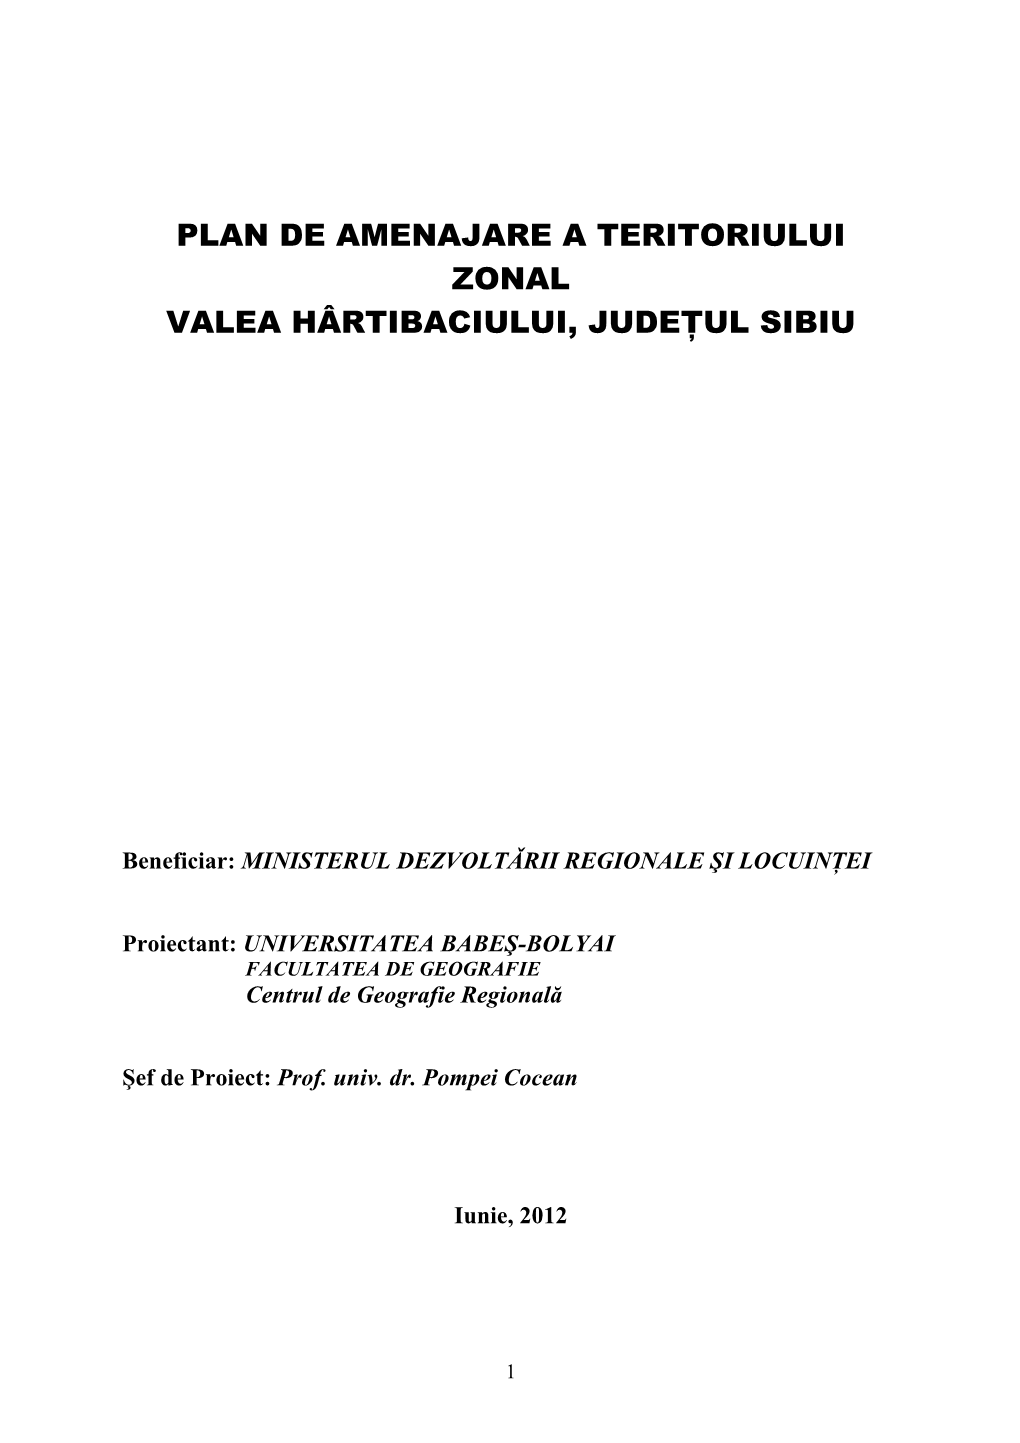 Plan De Amenajare a Teritoriului Zonal Valea Hârtibaciului, Judeţul Sibiu